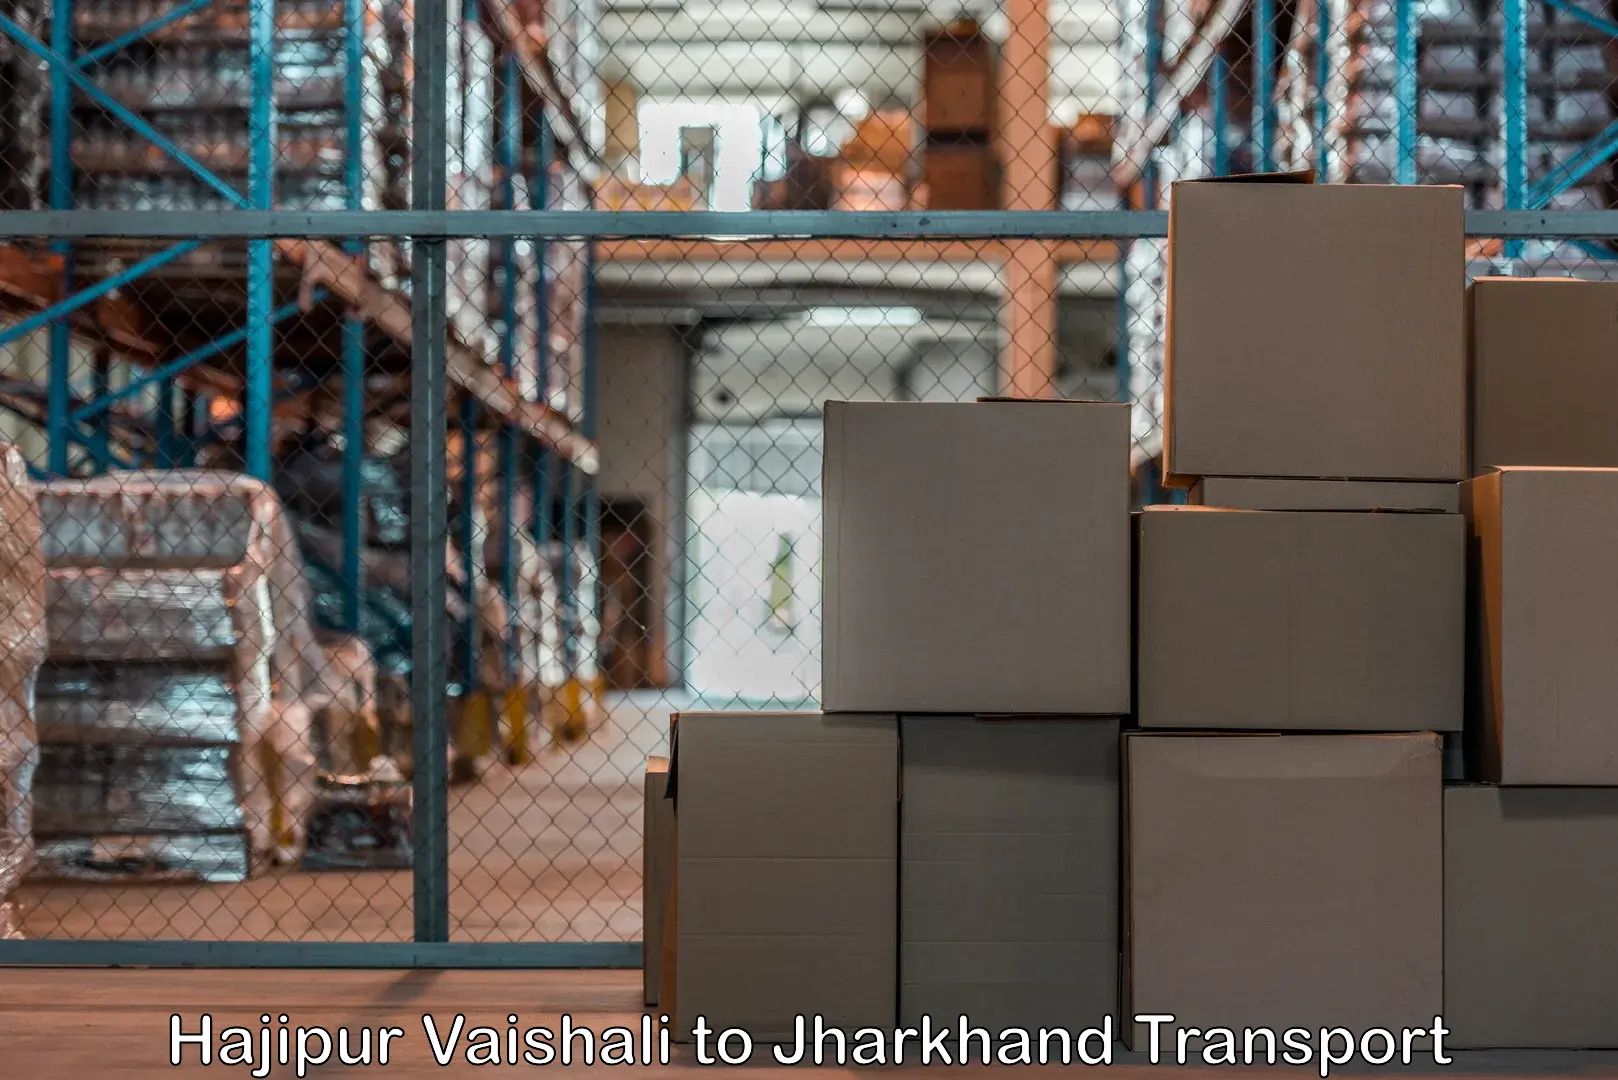 All India transport service Hajipur Vaishali to Jharkhand